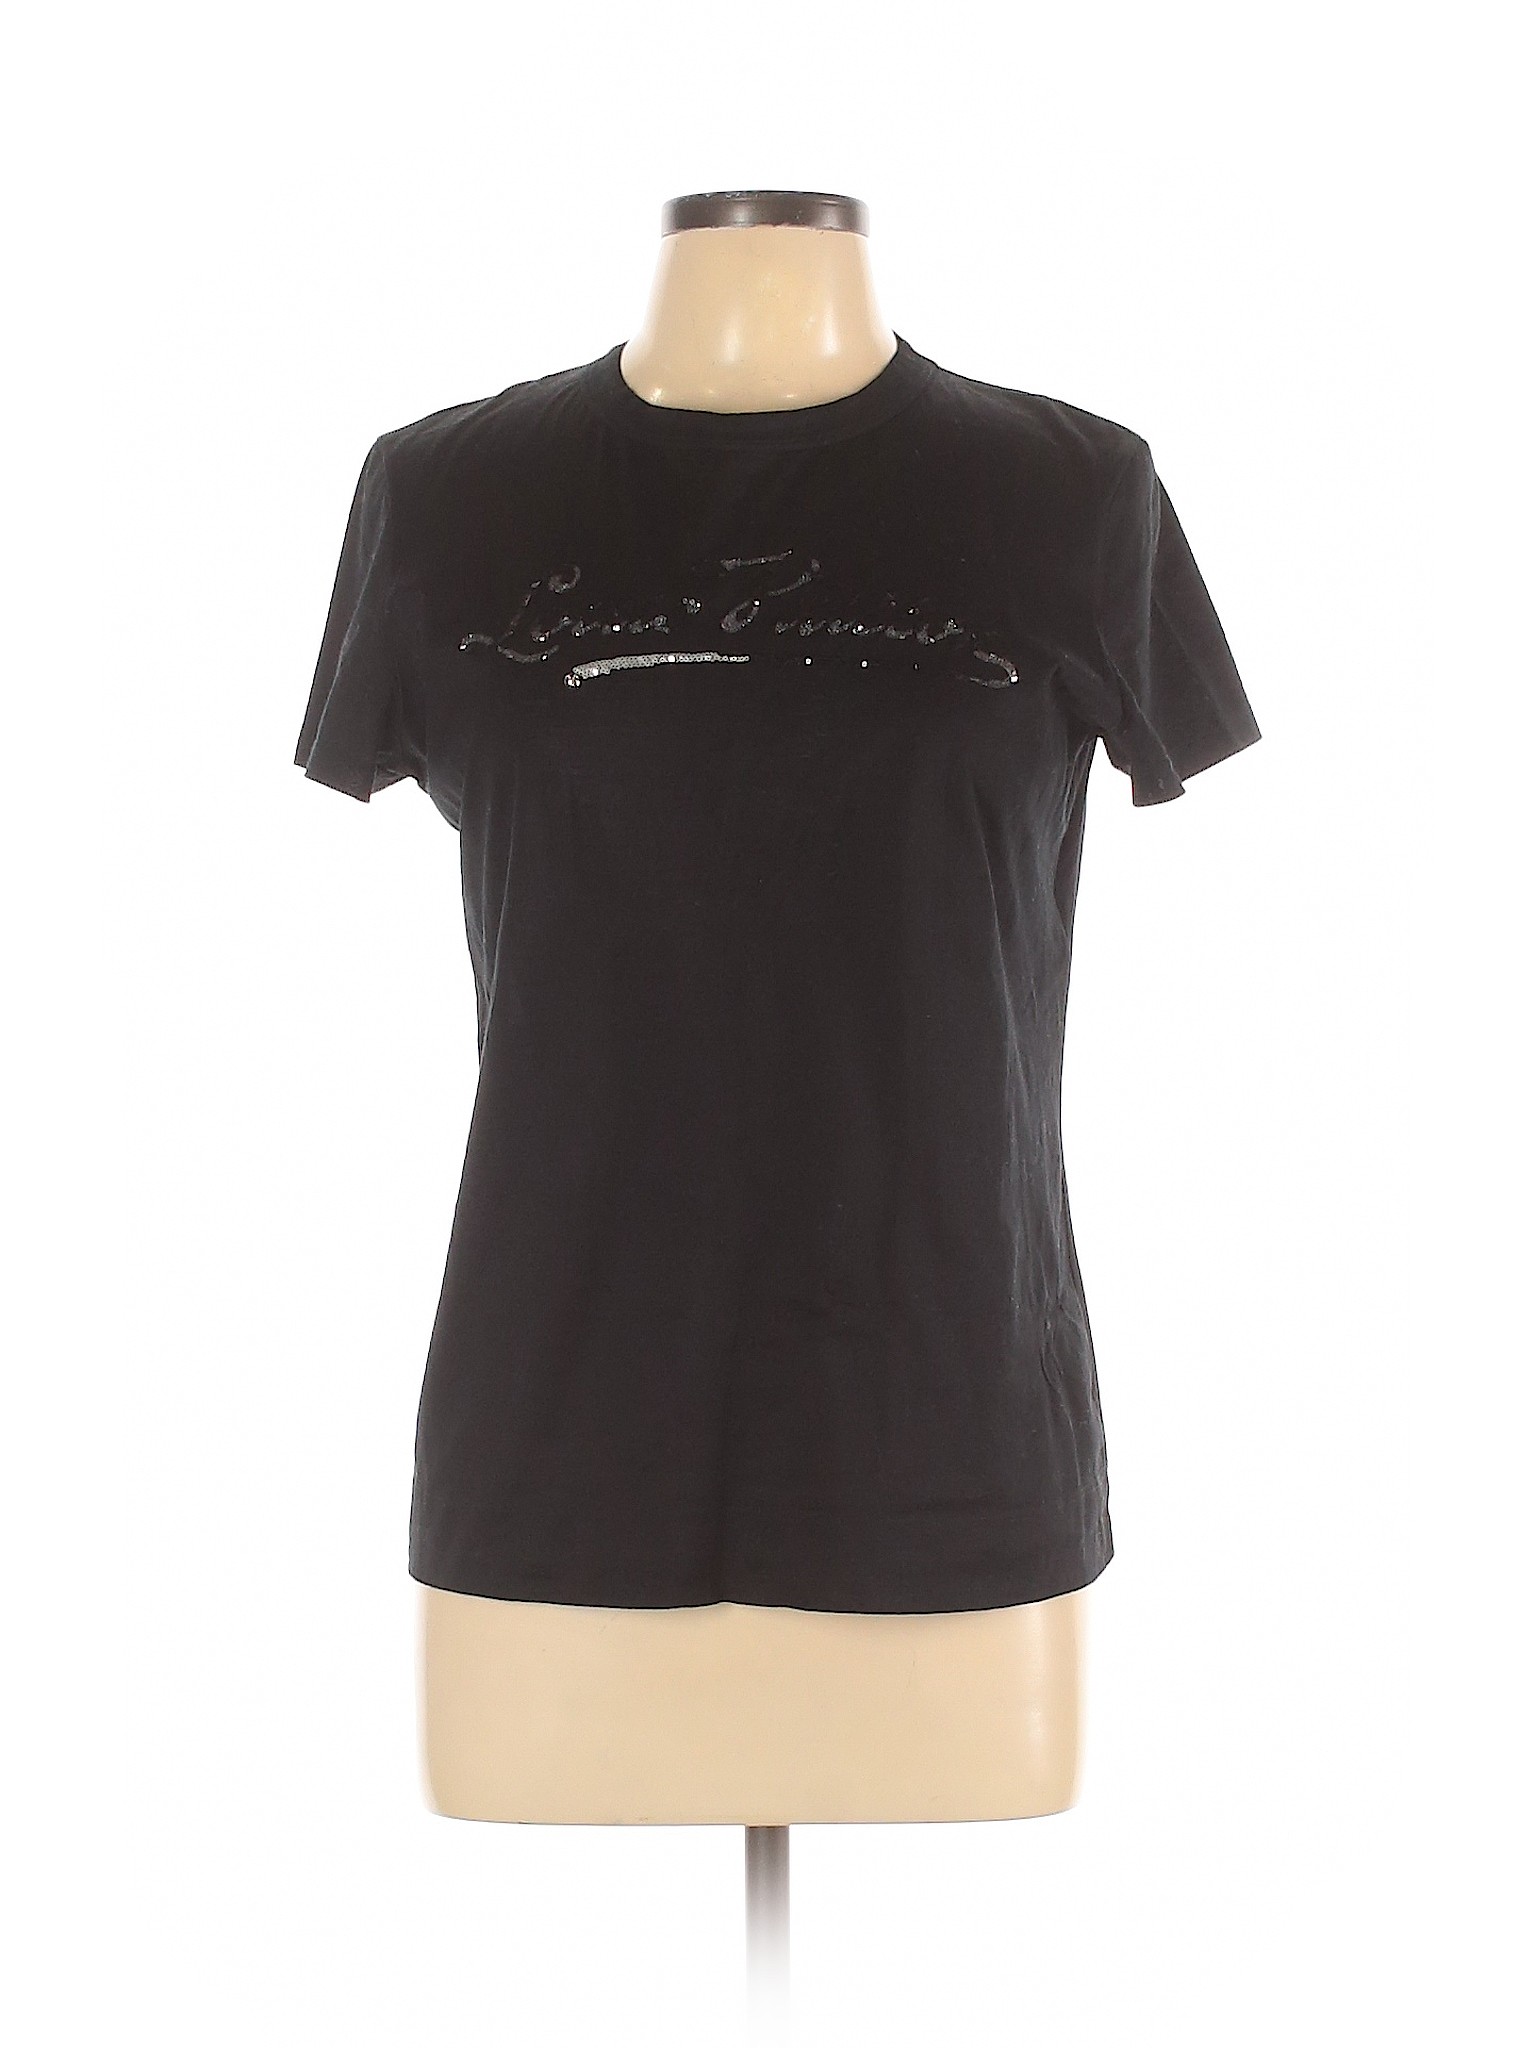 Louis Vuitton Women Black Short Sleeve T-Shirt L | eBay